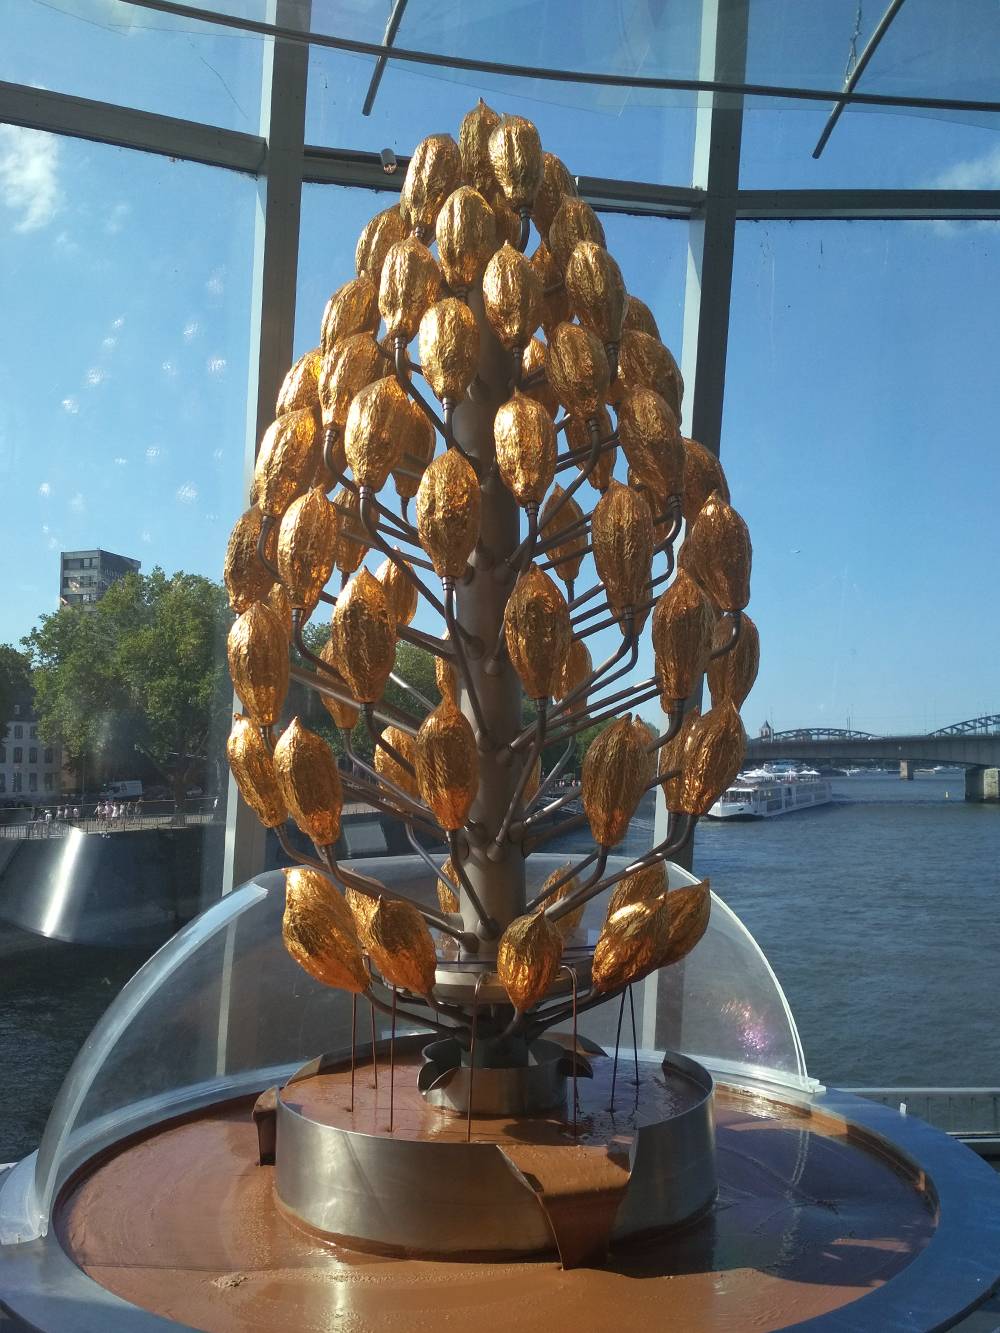 А это шоколадный фонтан в Музее шоколада. На территории музея есть оранжерея, где выращивают деревья какао, а еще кафе с панорамным видом на Рейн